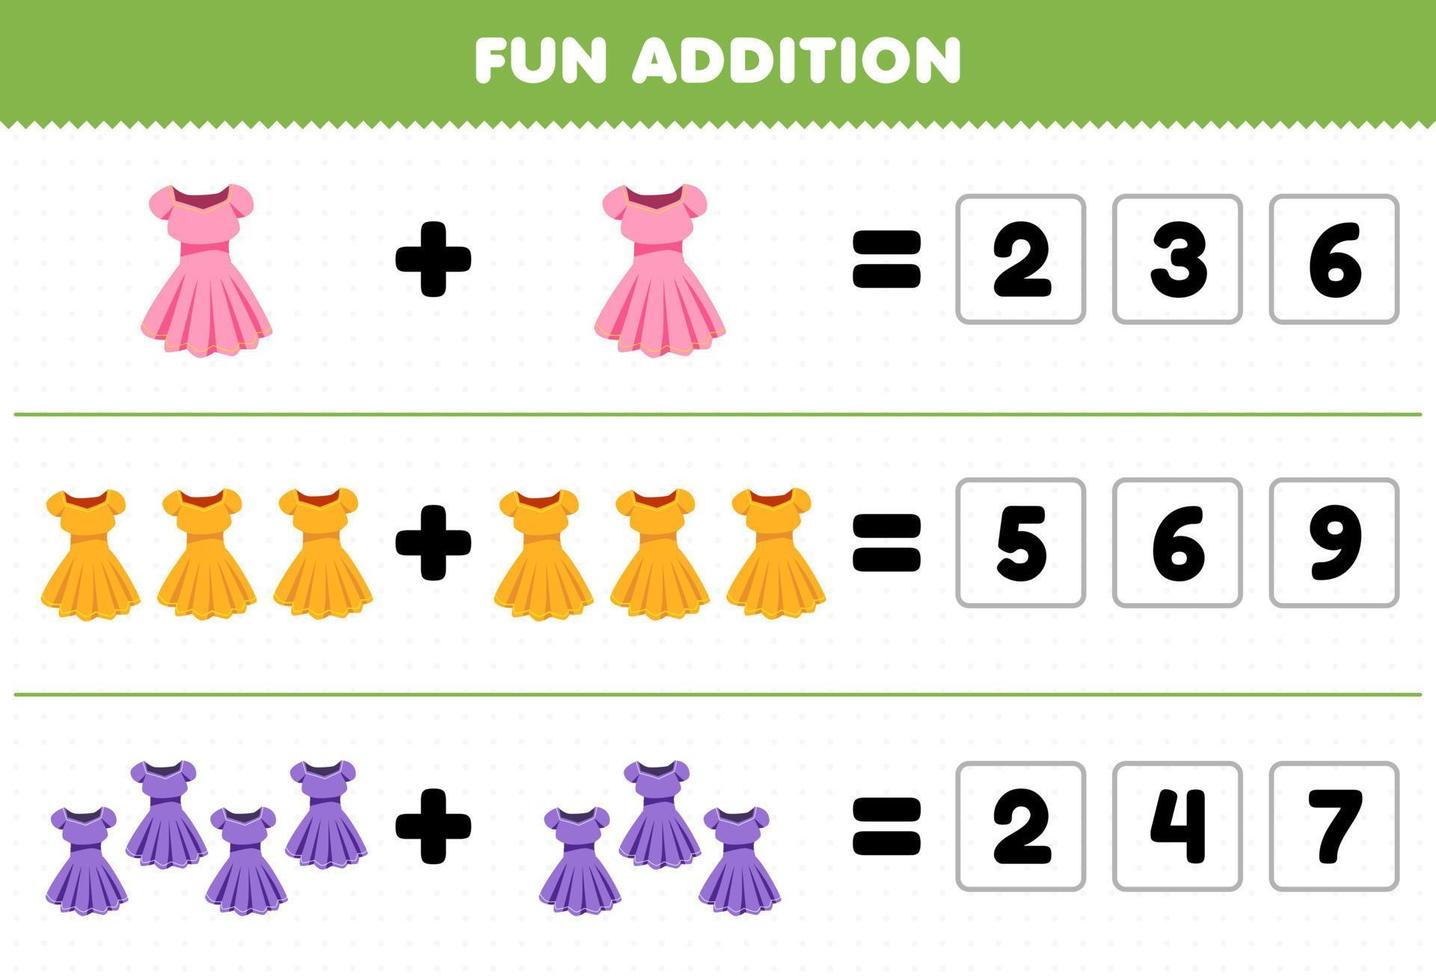 jogo de educação para crianças adição divertida por adivinhar o número correto de roupas vestíveis vestido planilha imprimível vetor